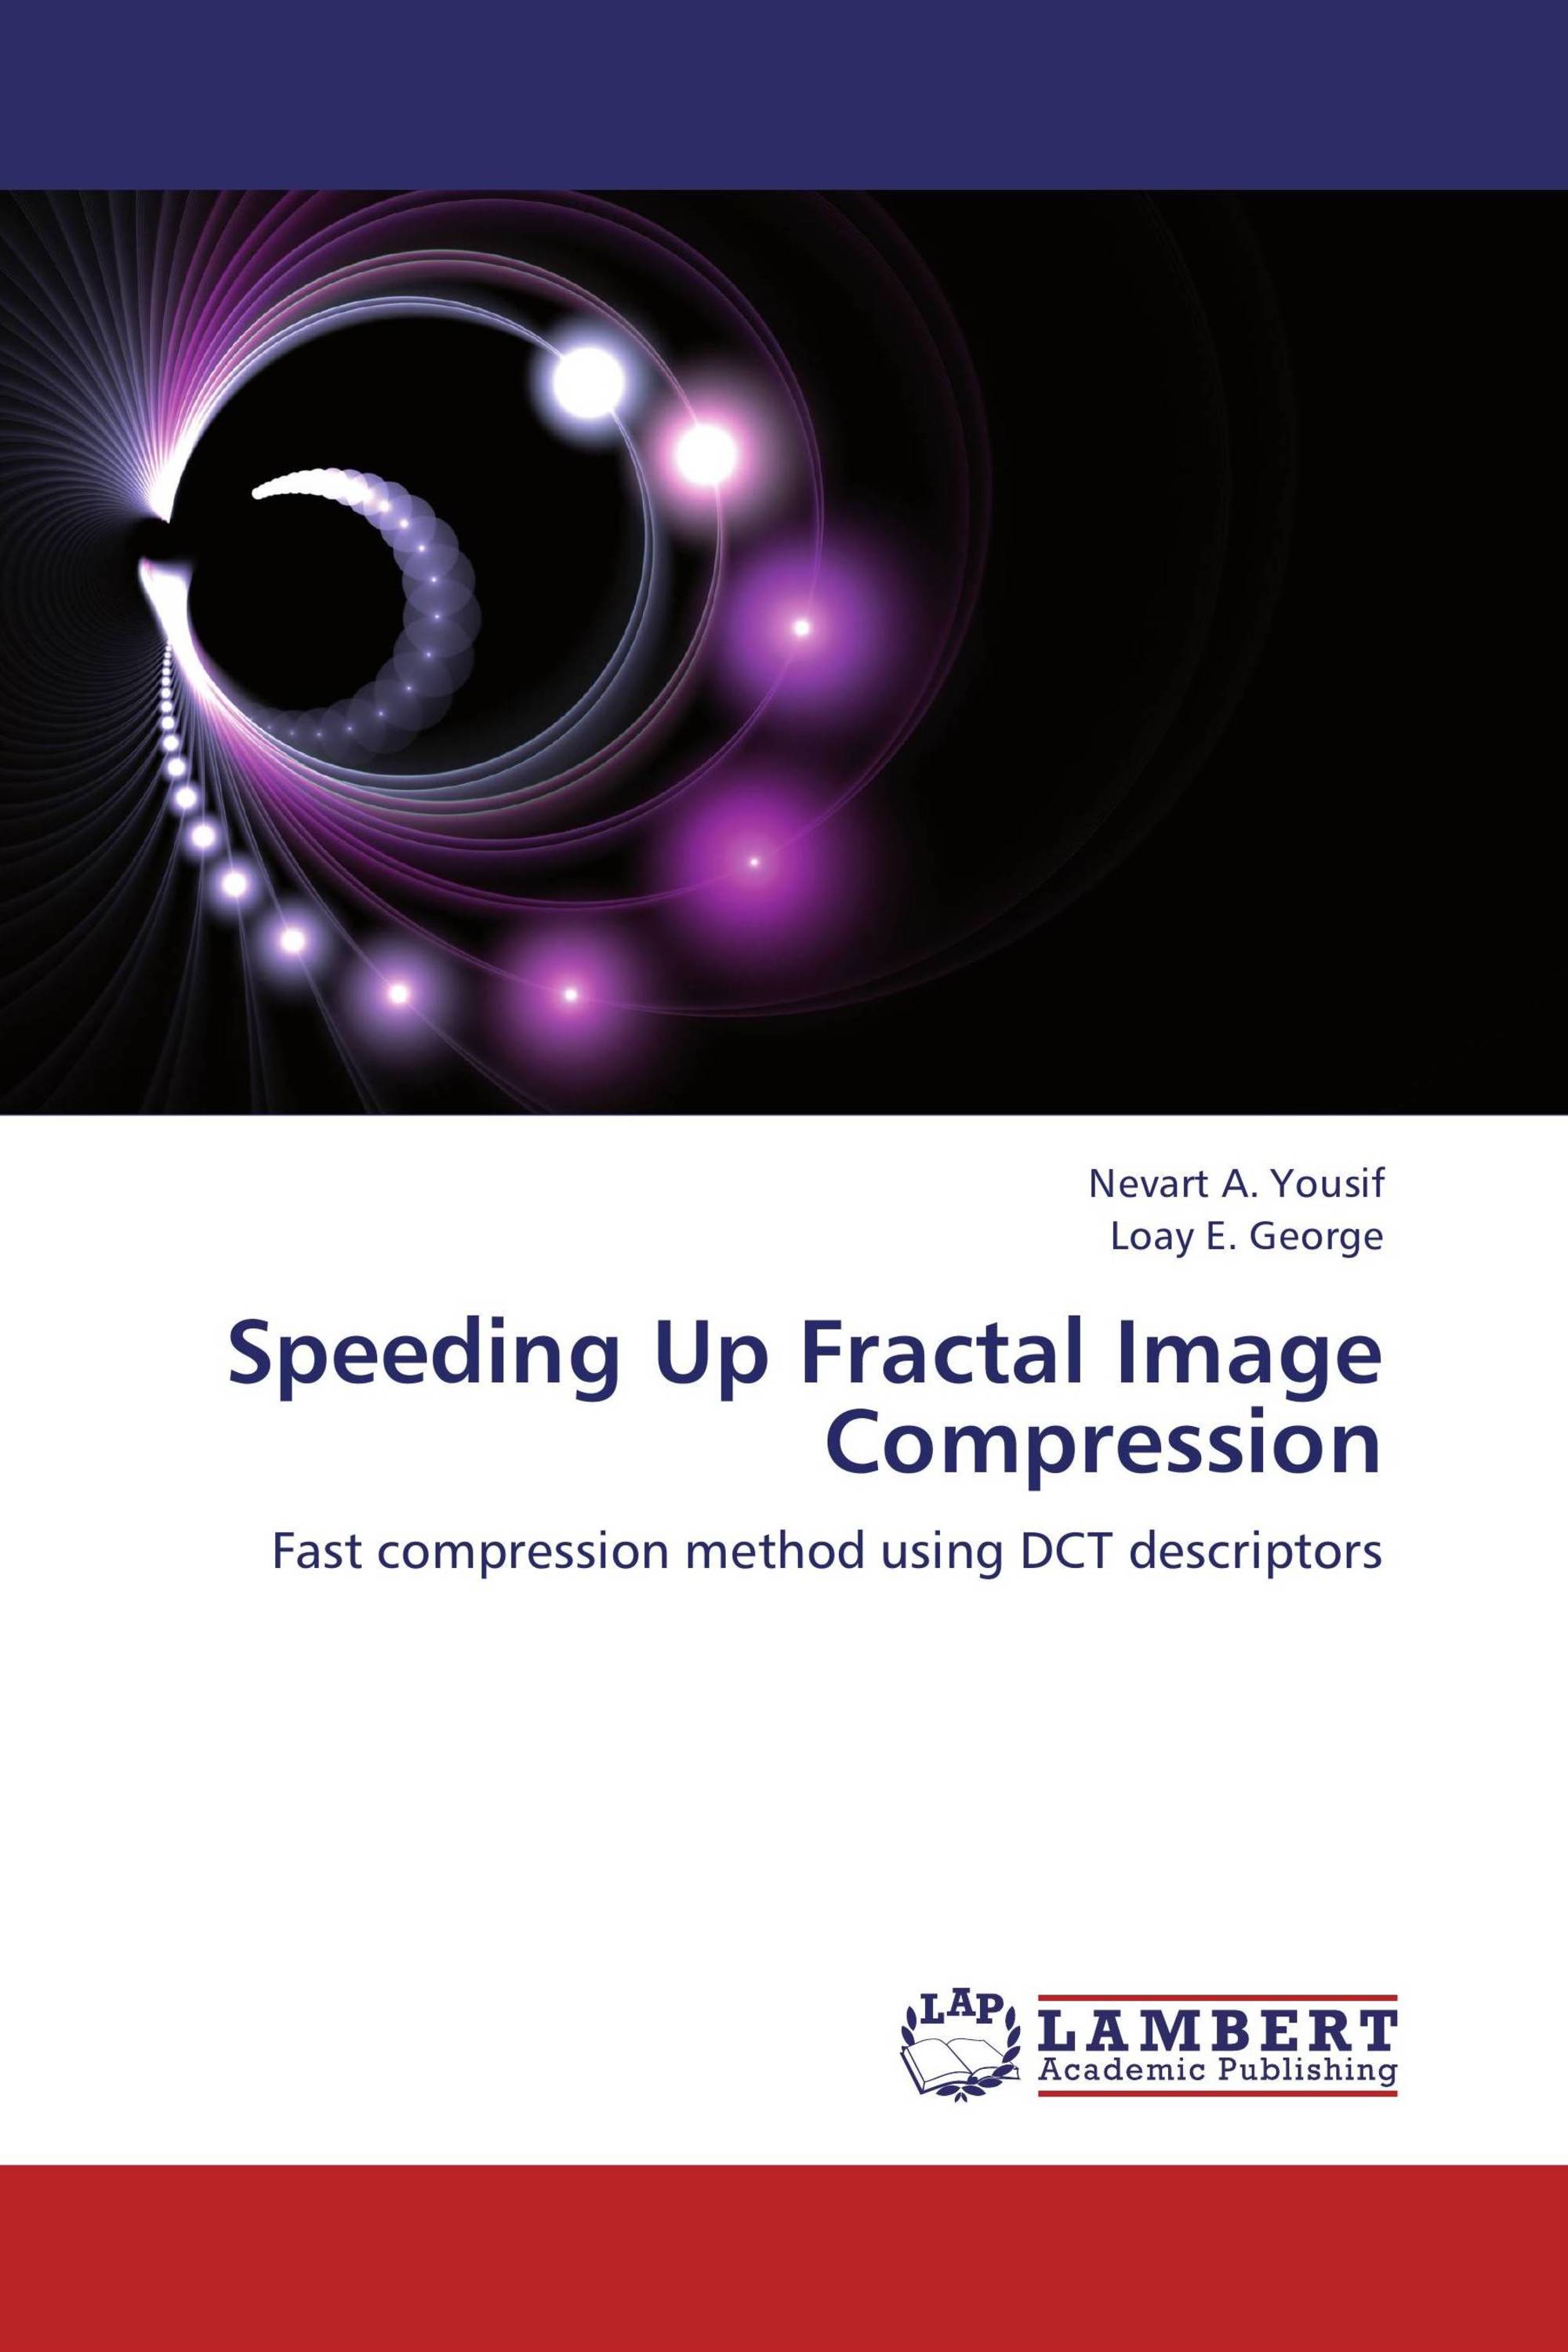 fractal image compression software free